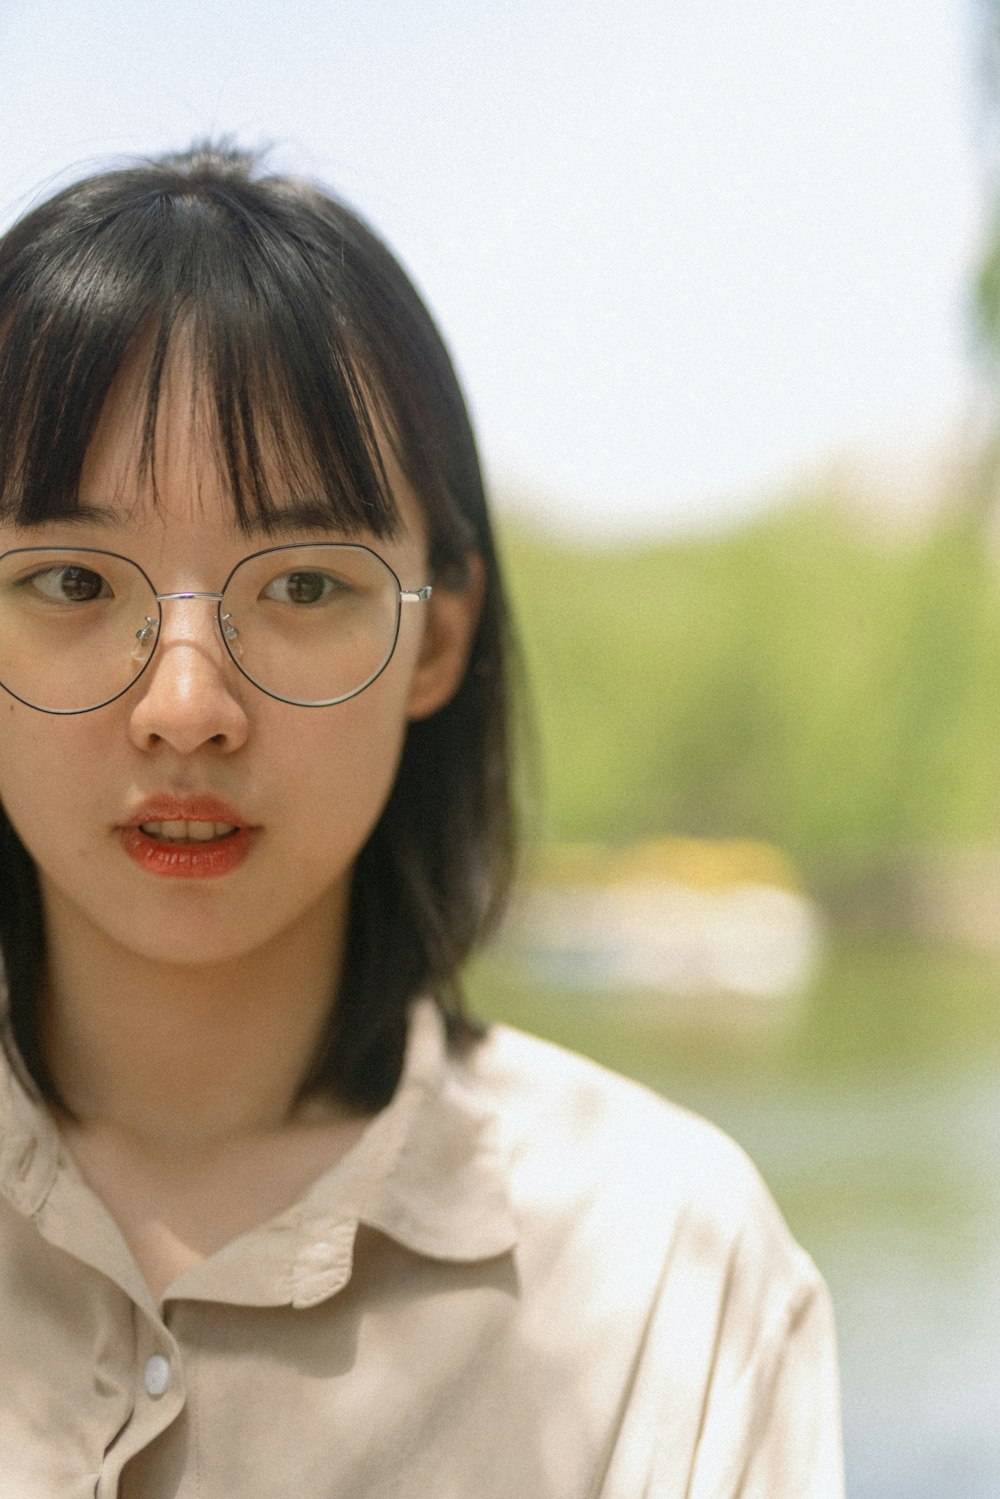 girl in white collared shirt wearing eyeglasses